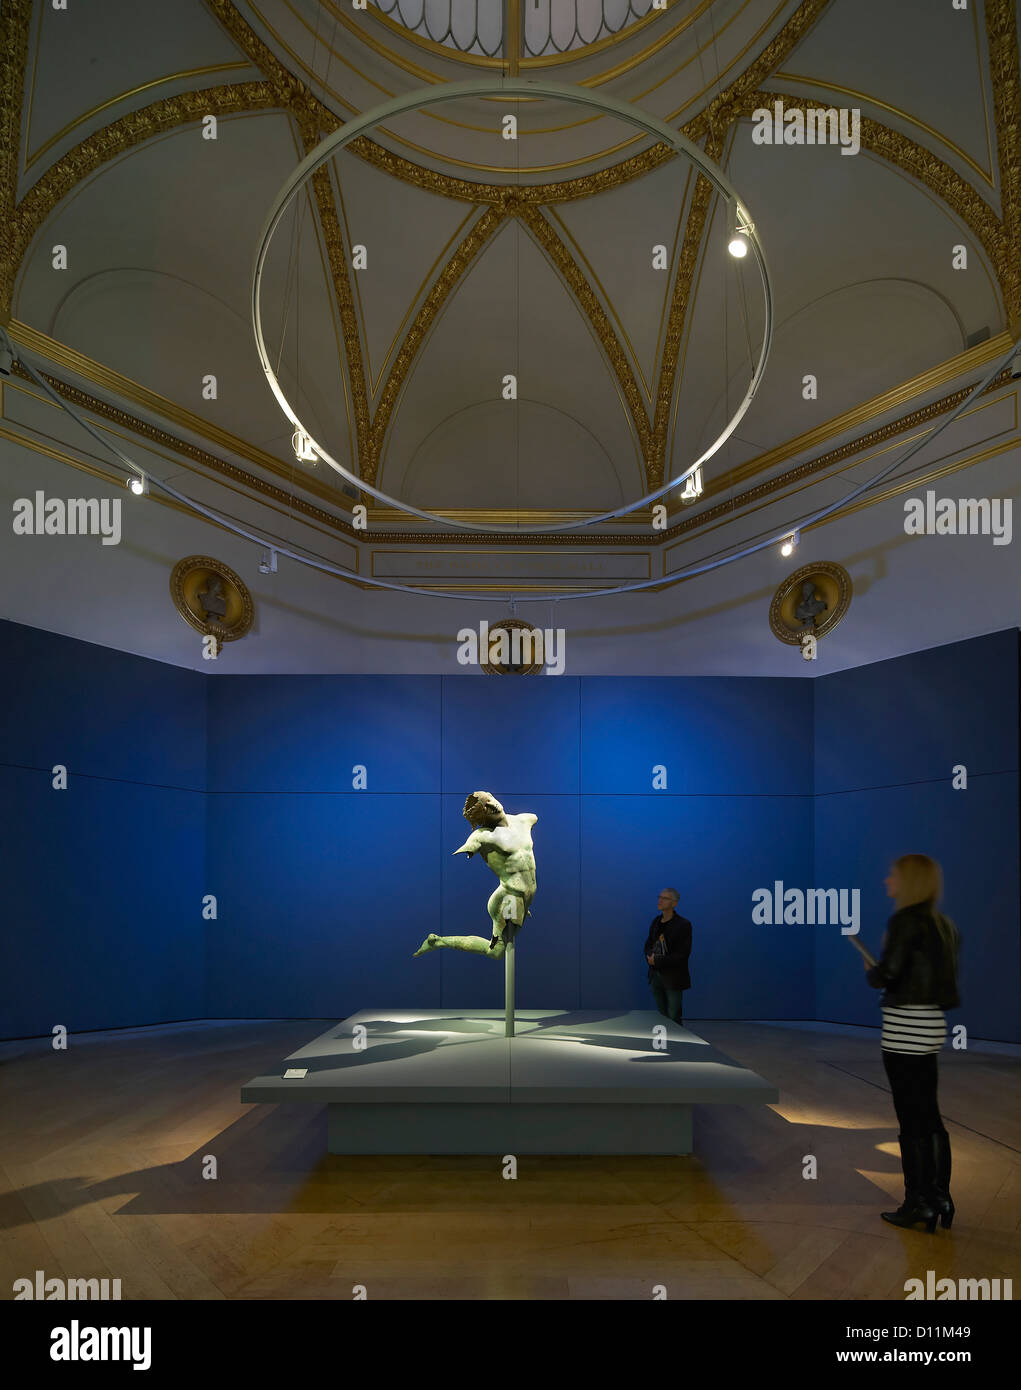 Royal Academy of Arts Bronze Ausstellung, London, Vereinigtes Königreich. Architekt: Stanton Williams, 2012. Blaues Zimmer mit tanzenden Satyr. Stockfoto